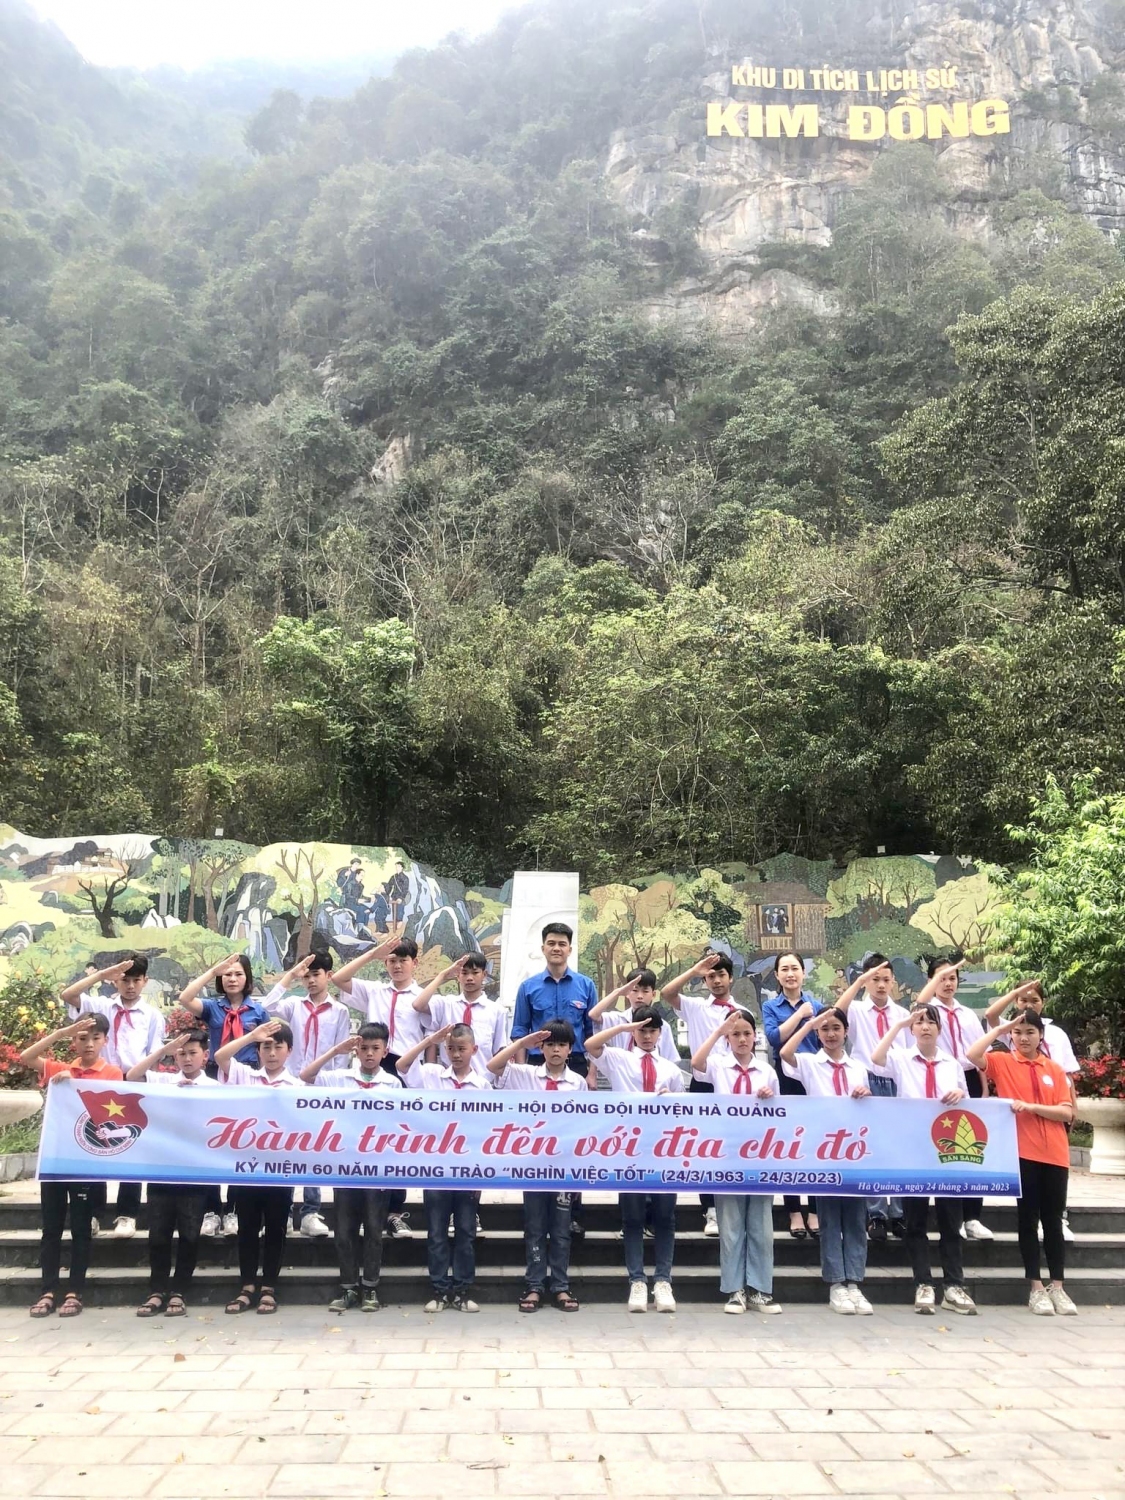 Tỉnh Đoàn - Hội đồng Đội huyện Hà Quảng tổ chức hành trình đến với Địa chỉ đỏ